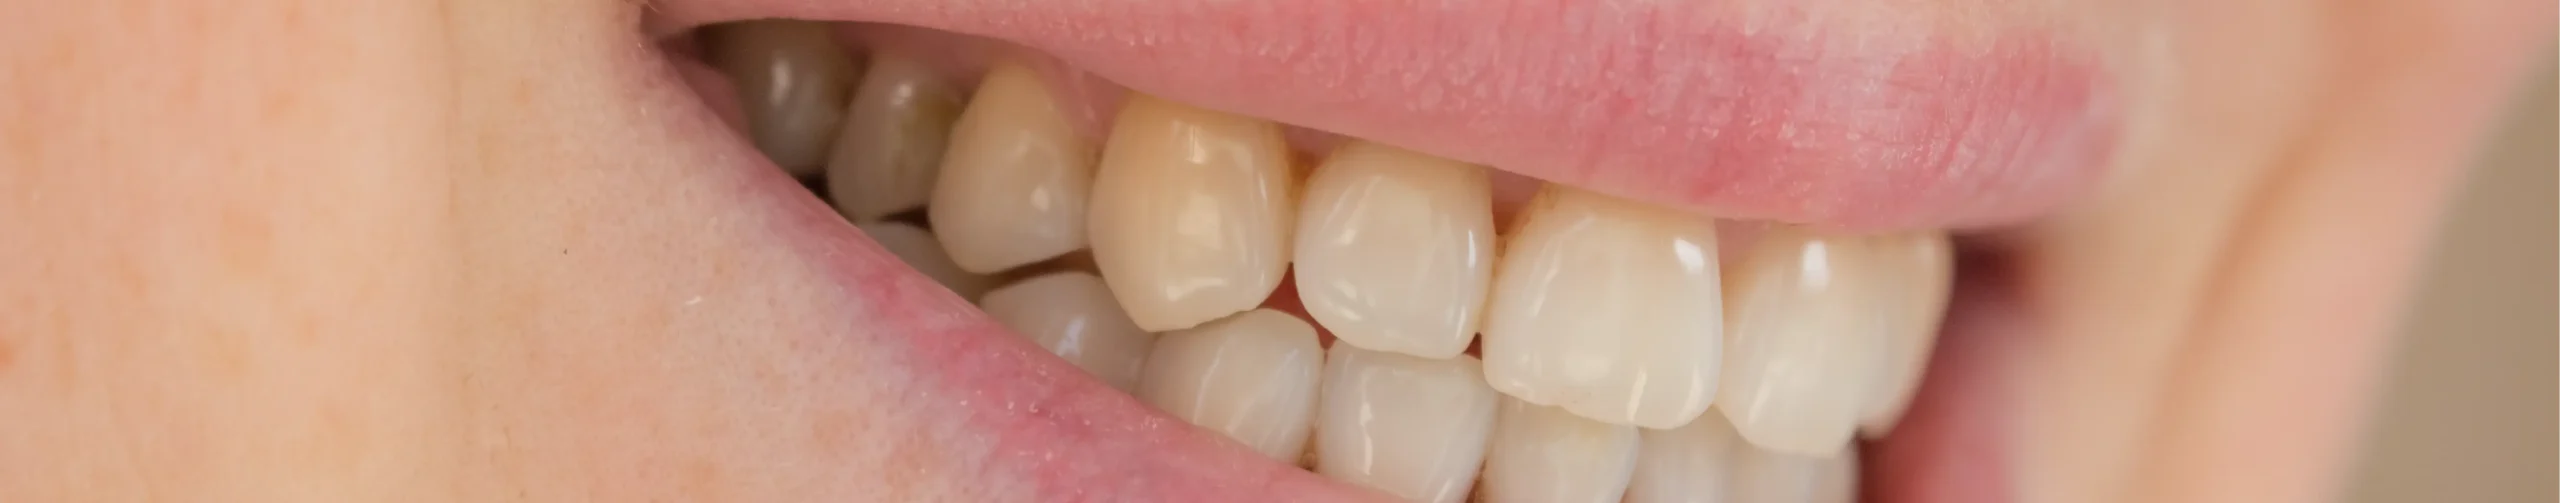 danni da ortodonzia